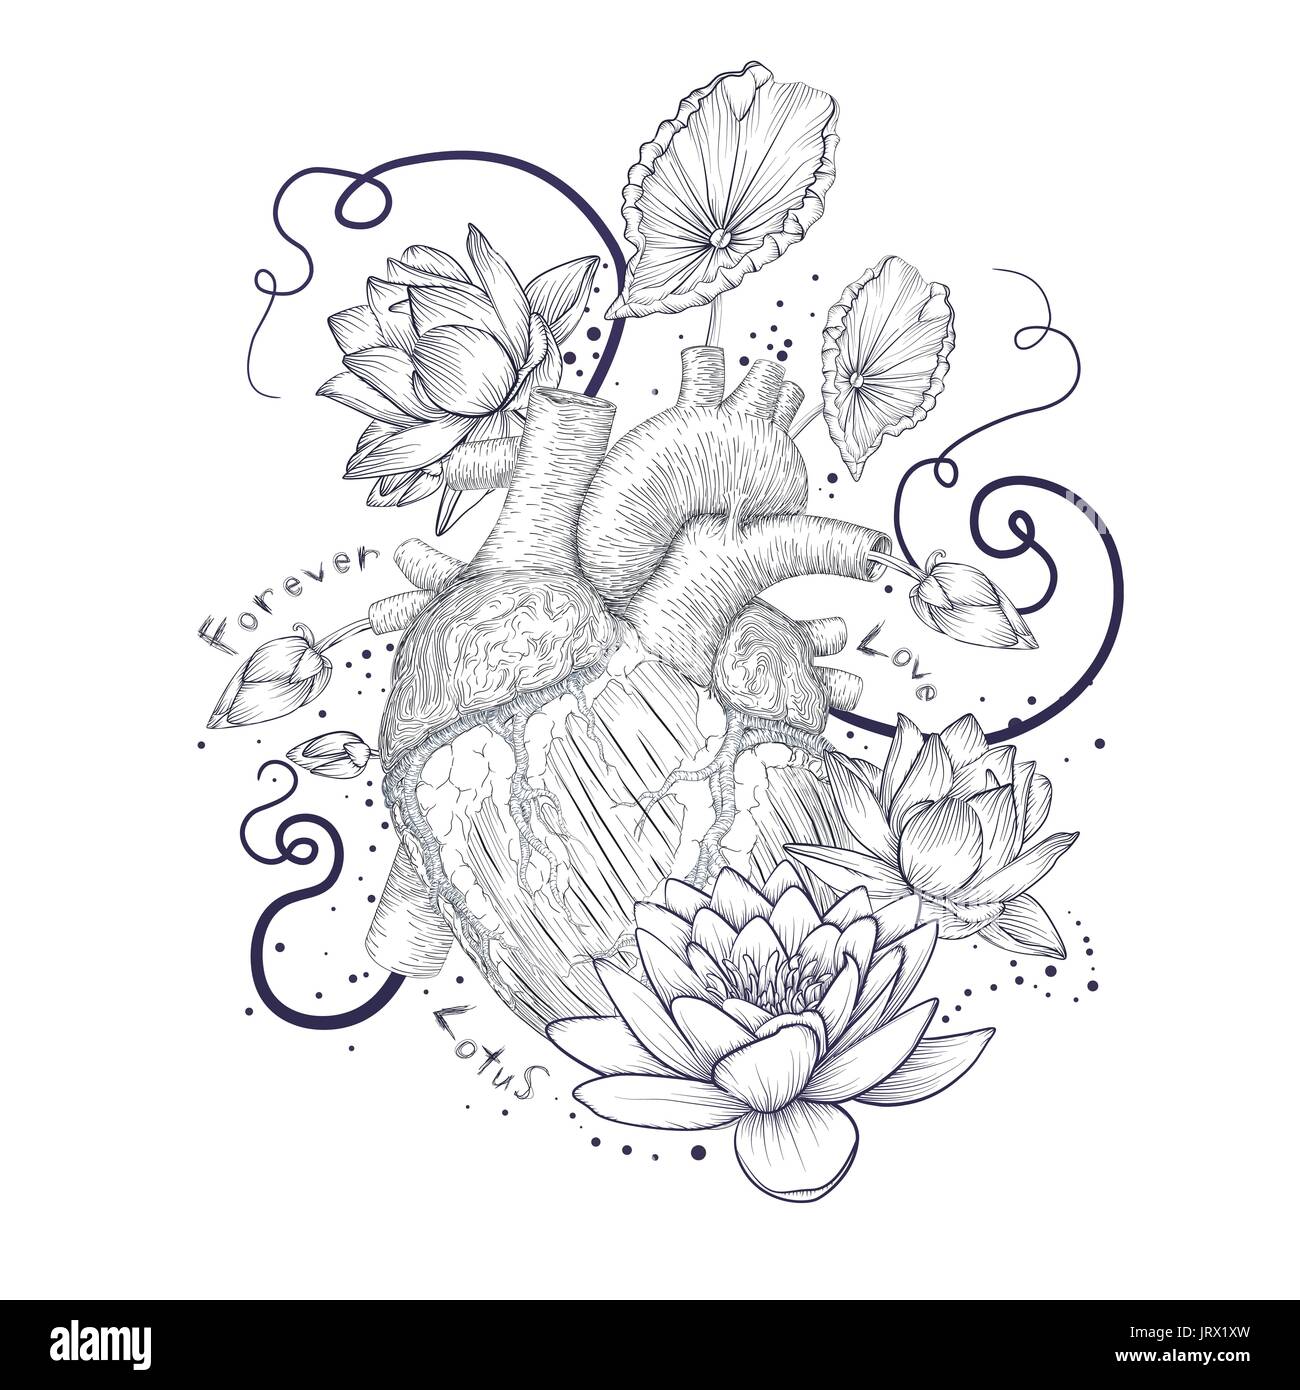 La flore humaine hipster coeur amour tatouage symbole coeur sauvage nénuphar fleur de lotus lily laisse bride décorative des points. L'art fantastique t-shirt vecteur de conception Illustration de Vecteur